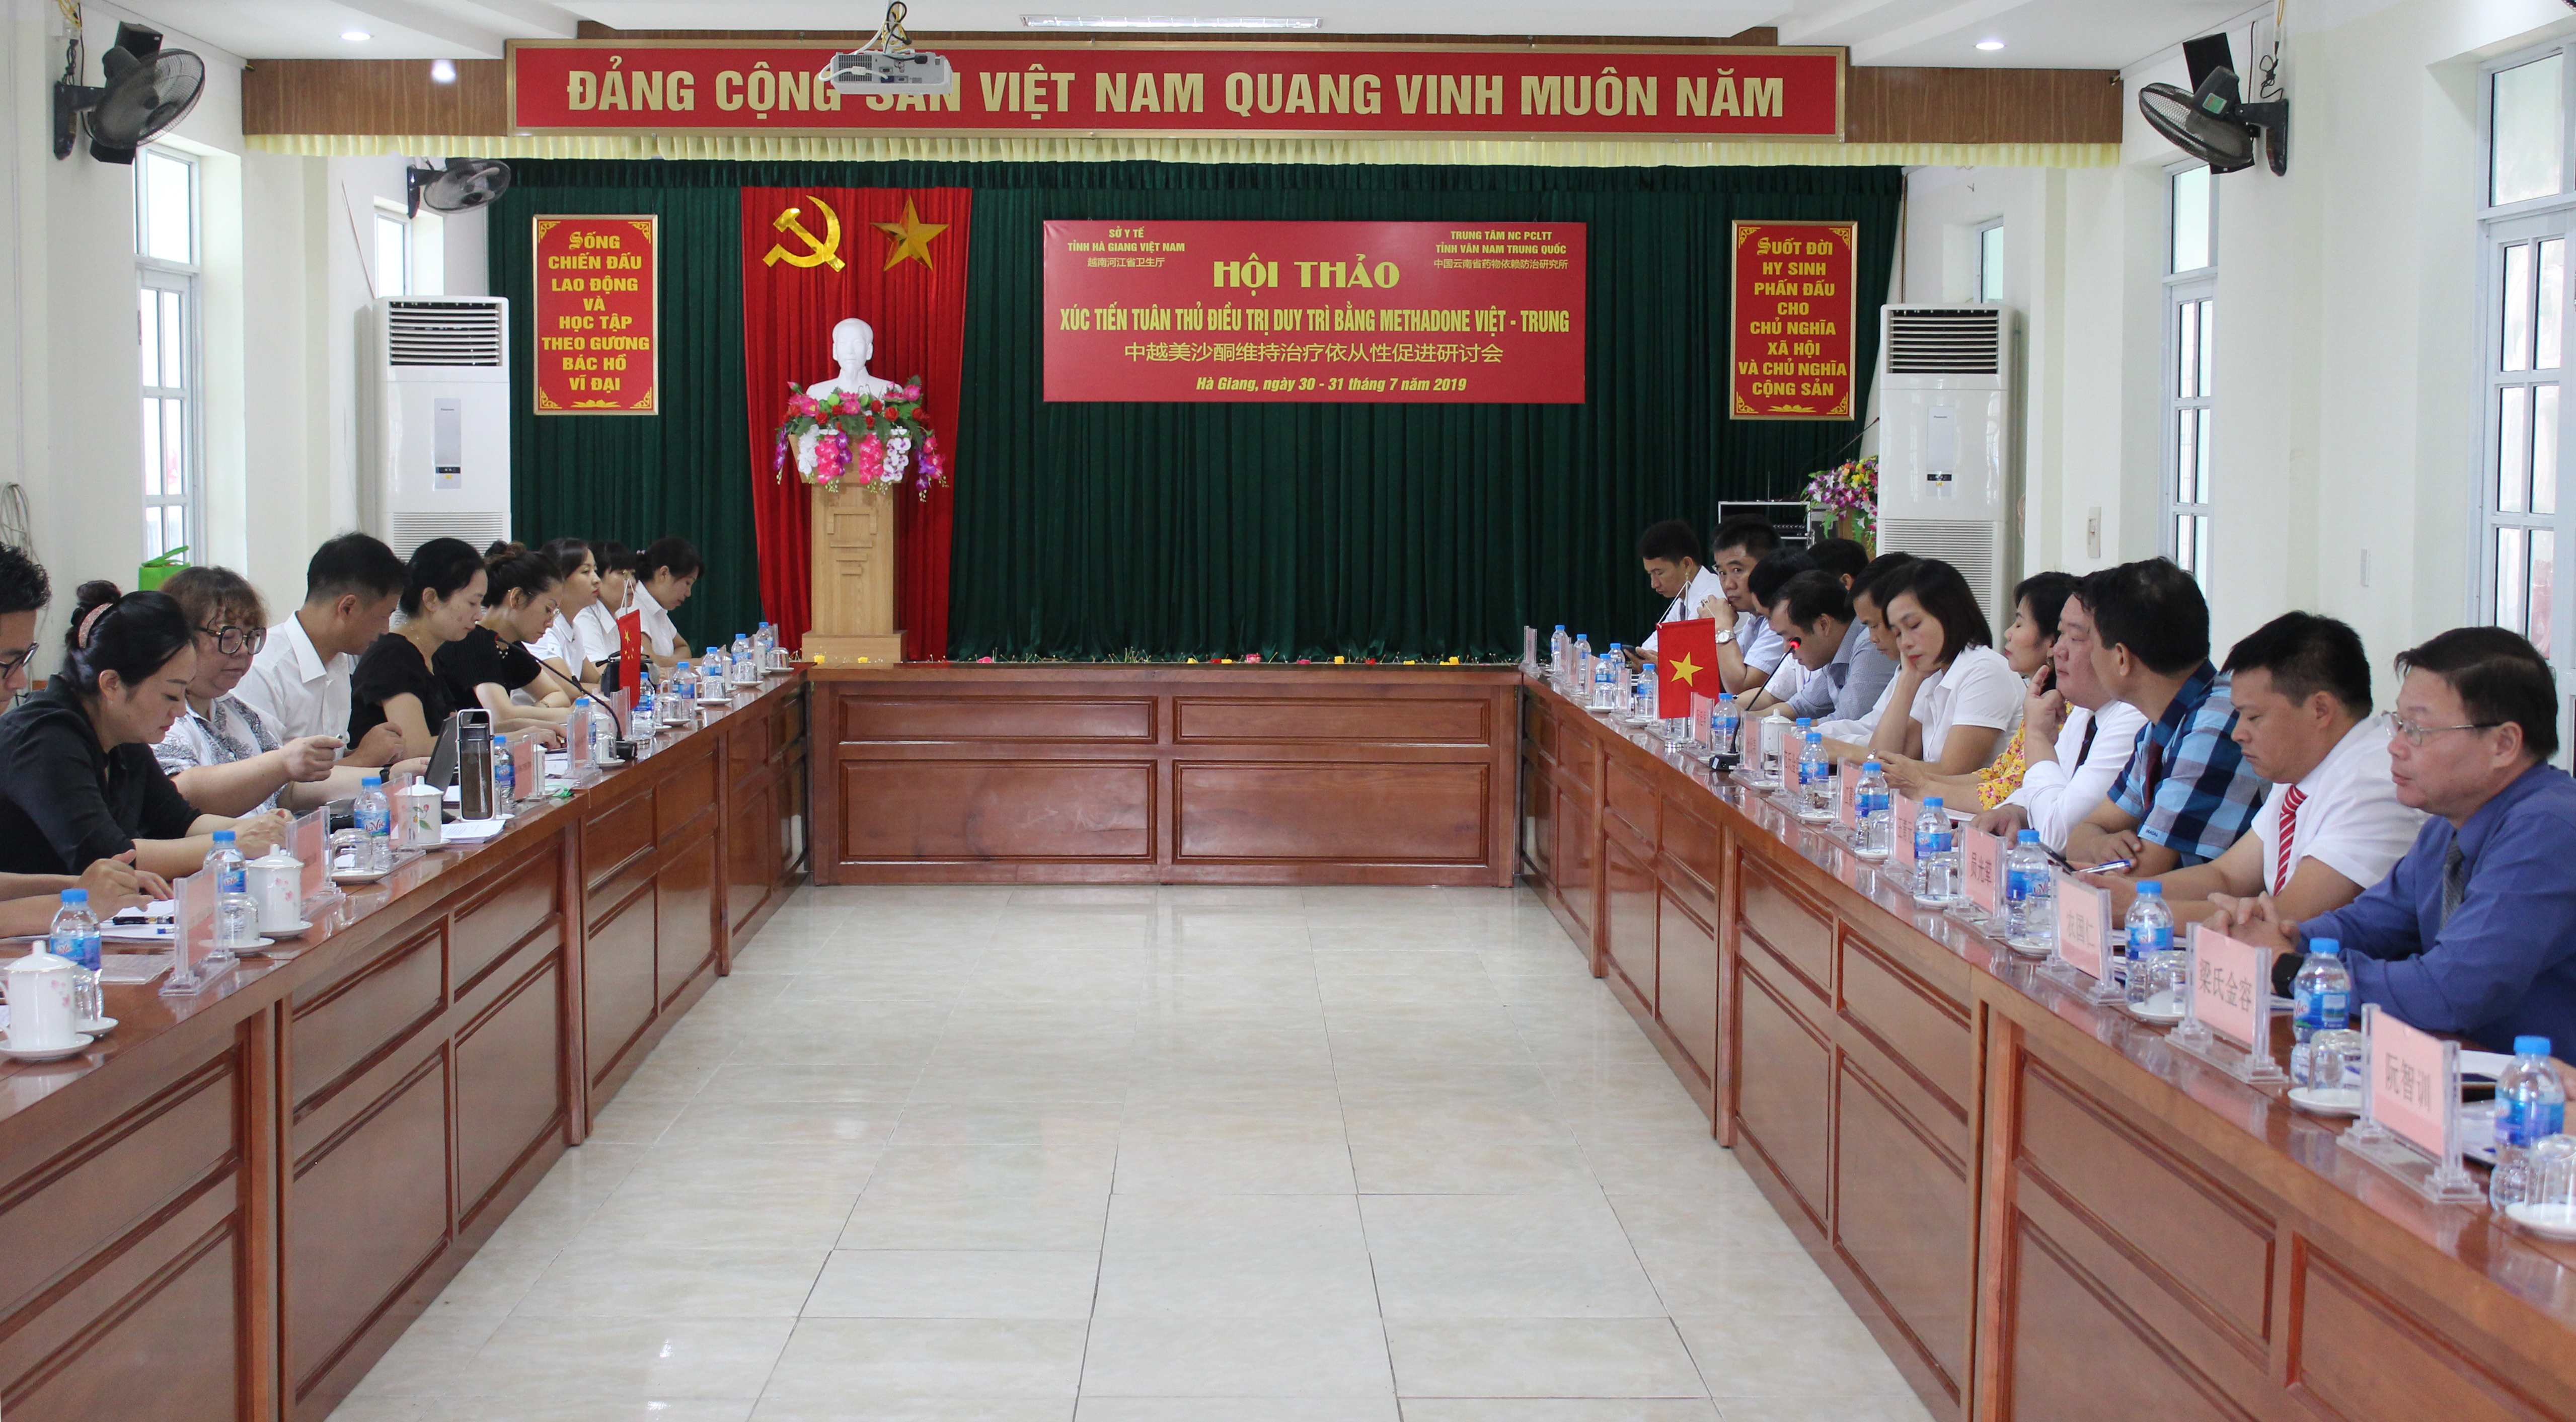 Hội thảo “Xúc tiến tuân thủ điều trị duy trì bằng Methadone Việt – Trung”